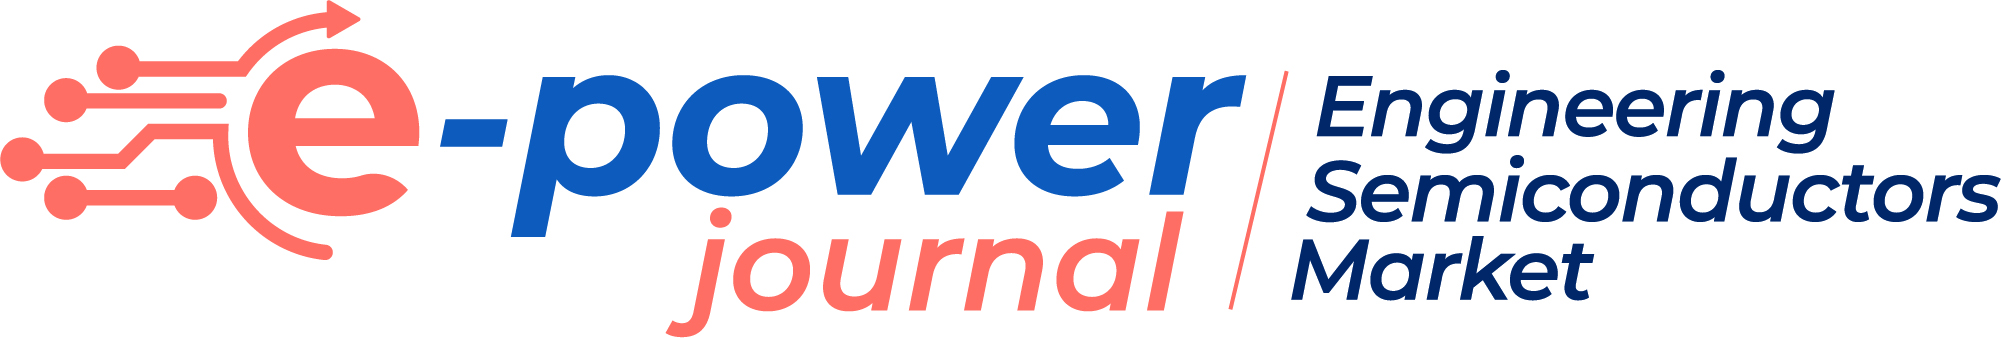 e-power Journal